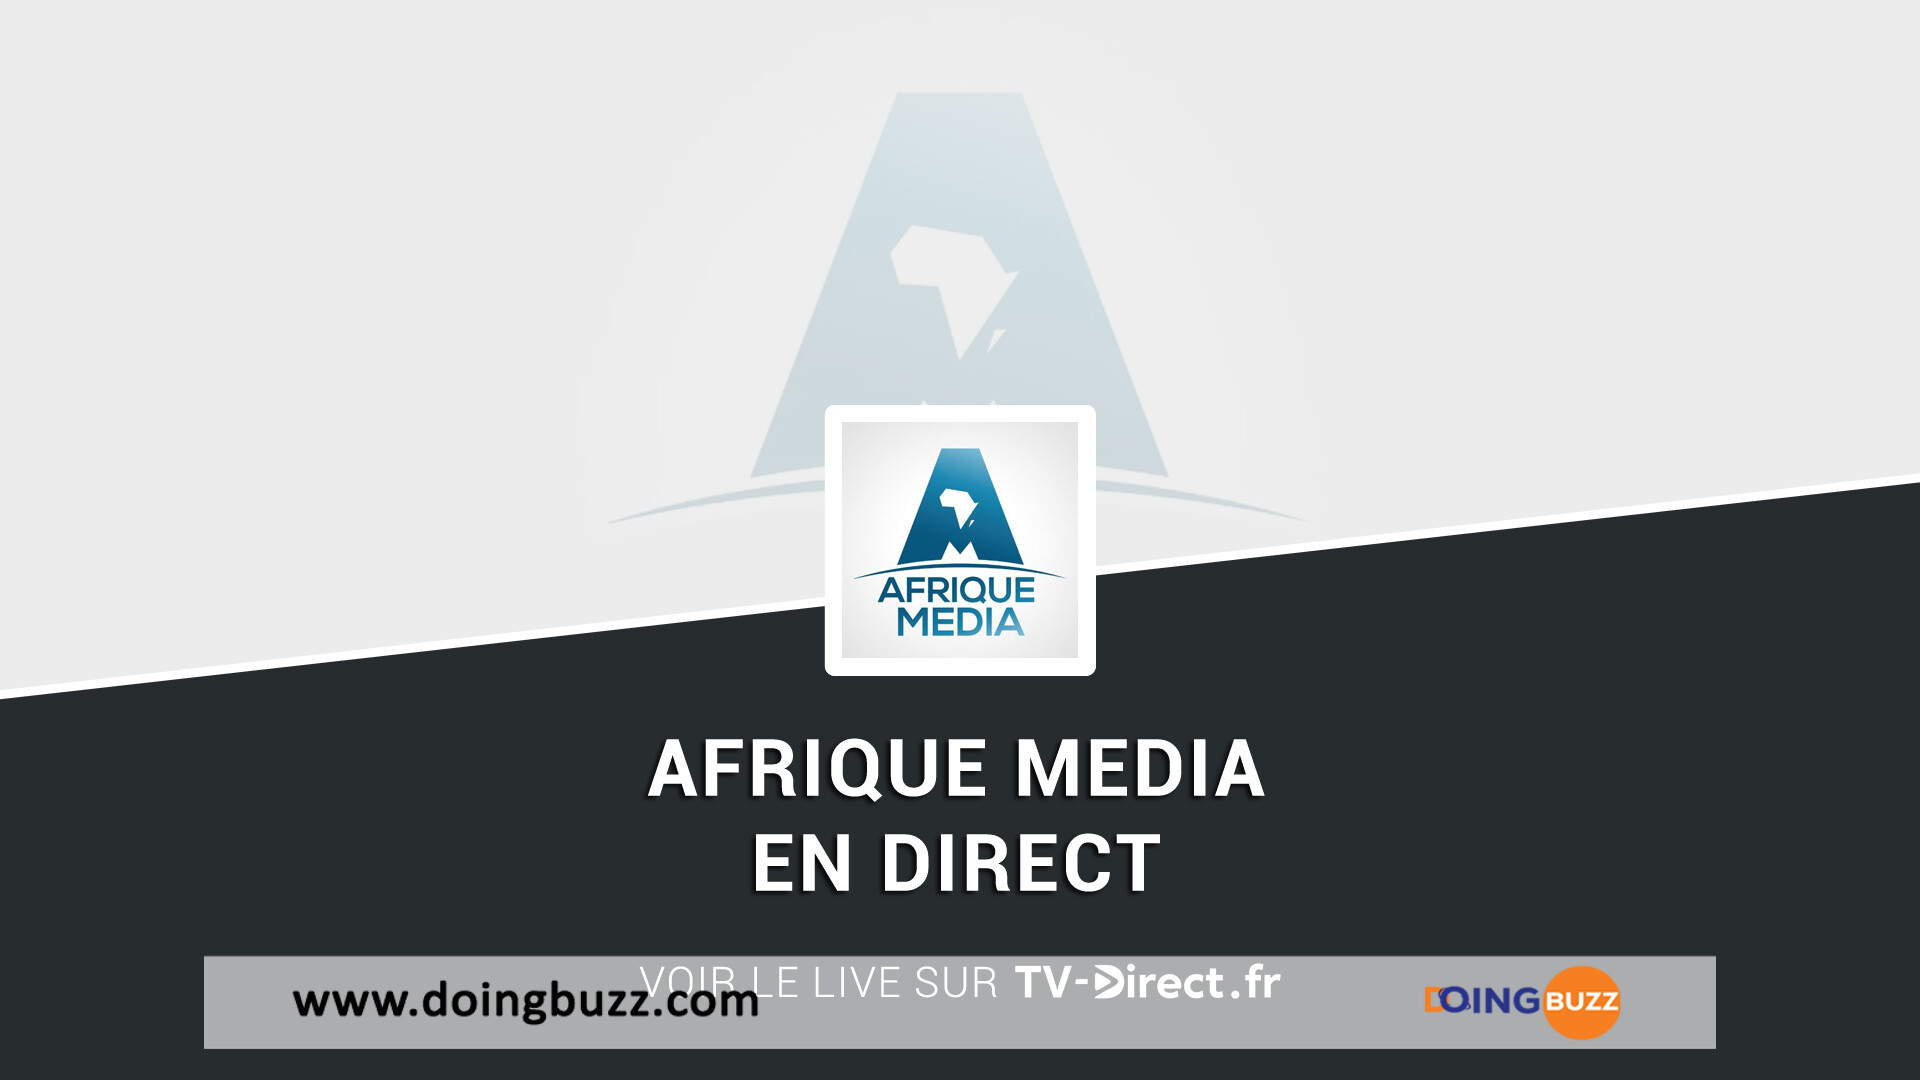 Fermeture D'Afrique Média Au Cameroun : Les Défis De La Conformité Sociale Au Premier Plan